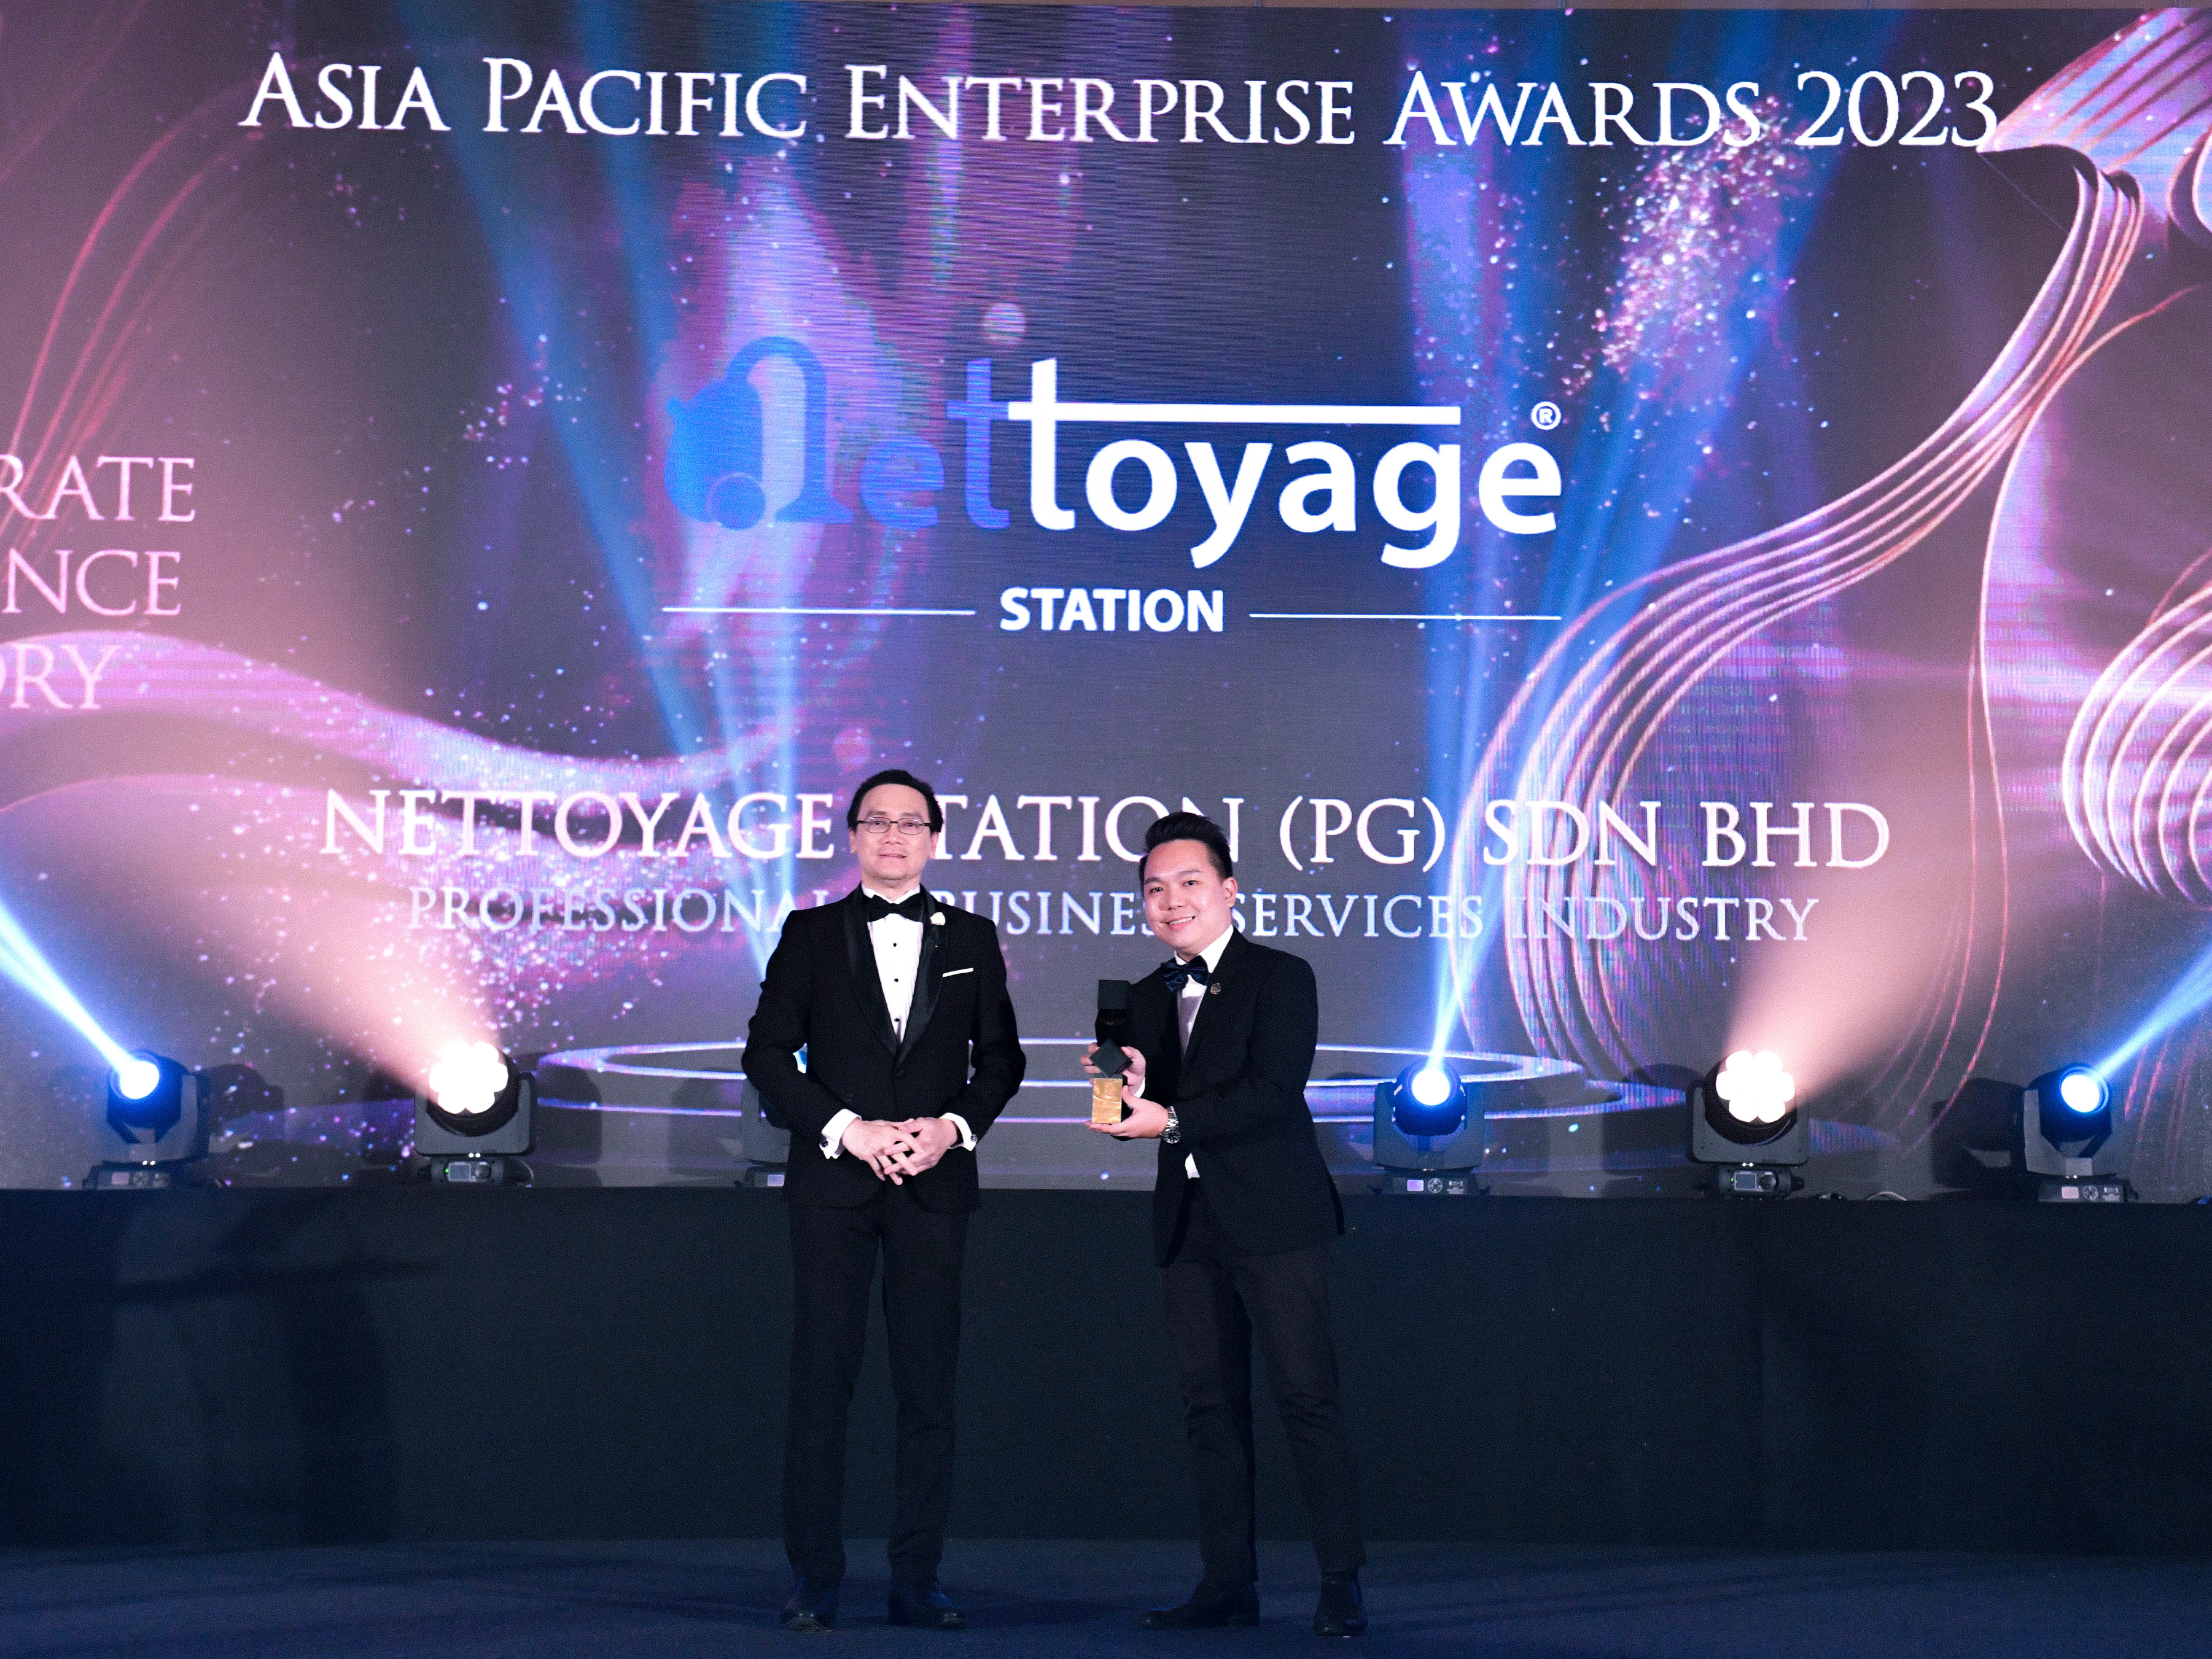 Asia Pacific Enterprise Award 2023